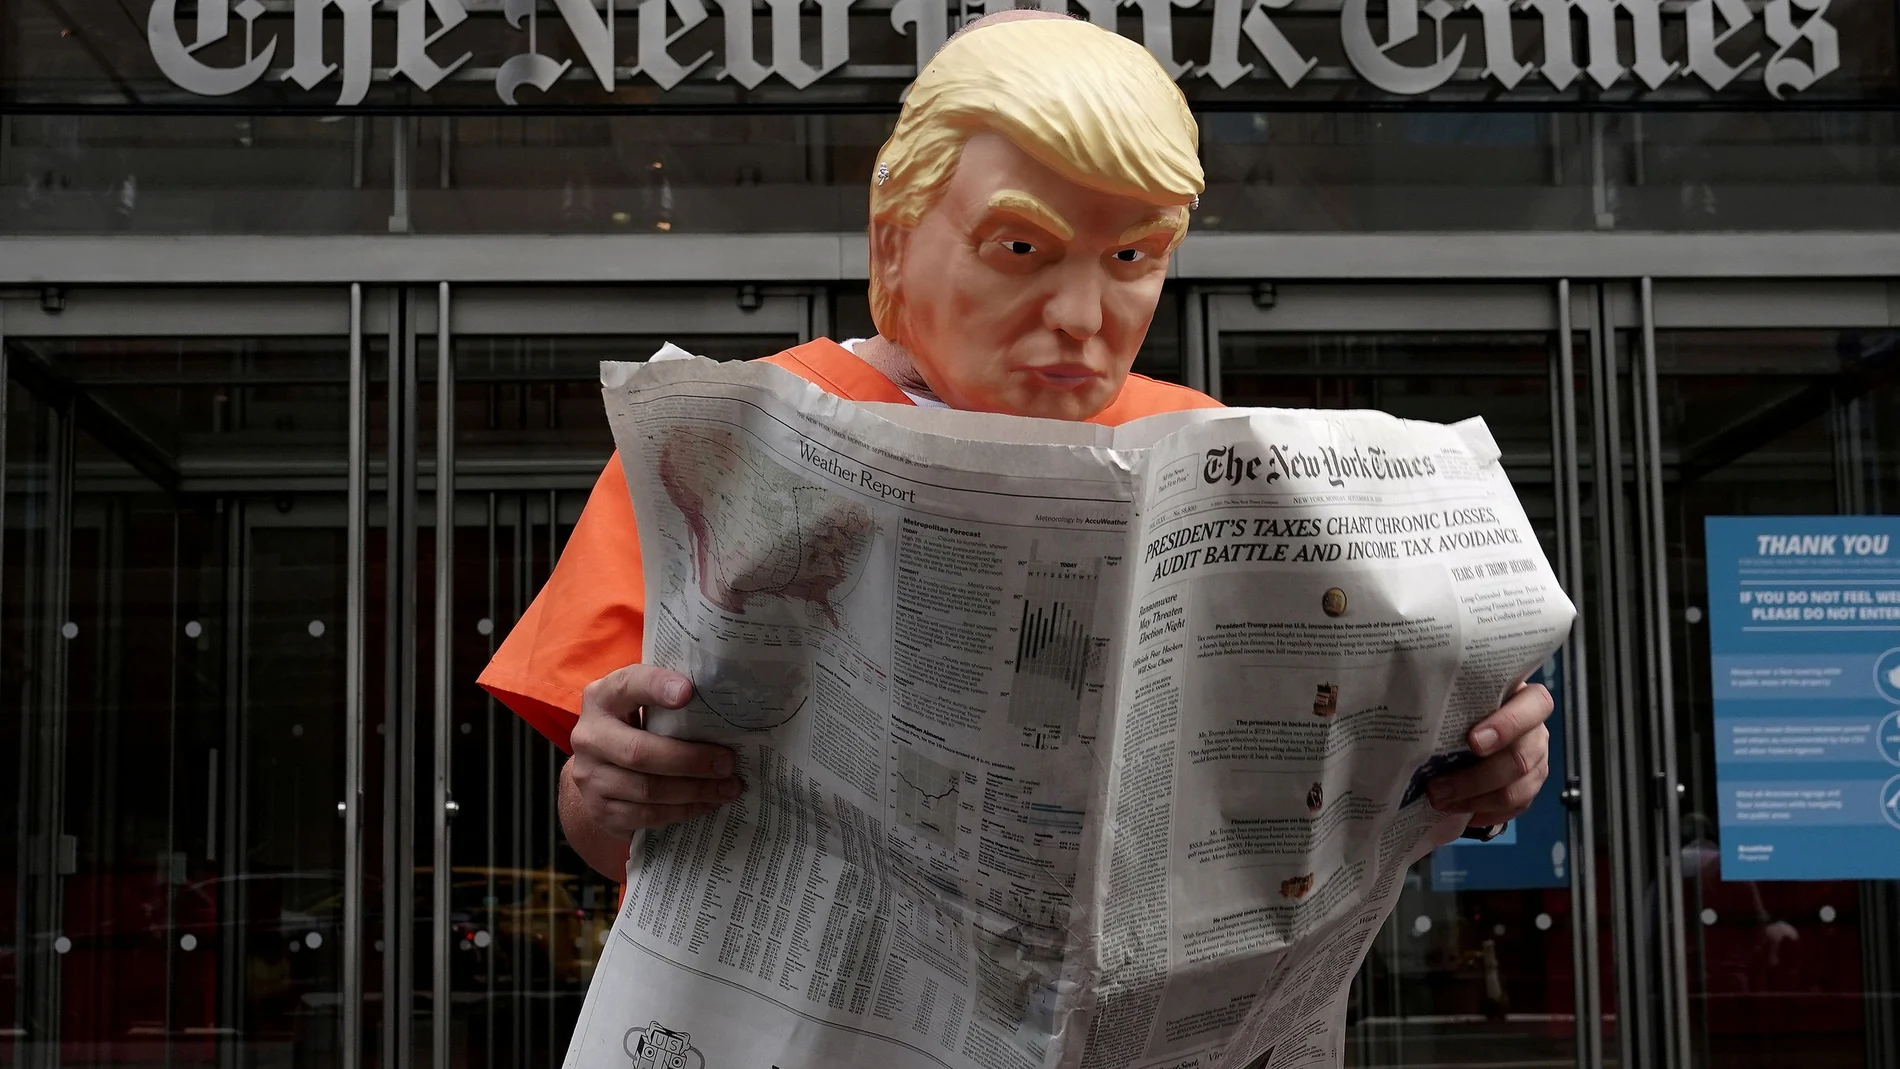 Un activista anti Trump vestido como el presidente con traje de presidiario frente a la sede del "New York Times"